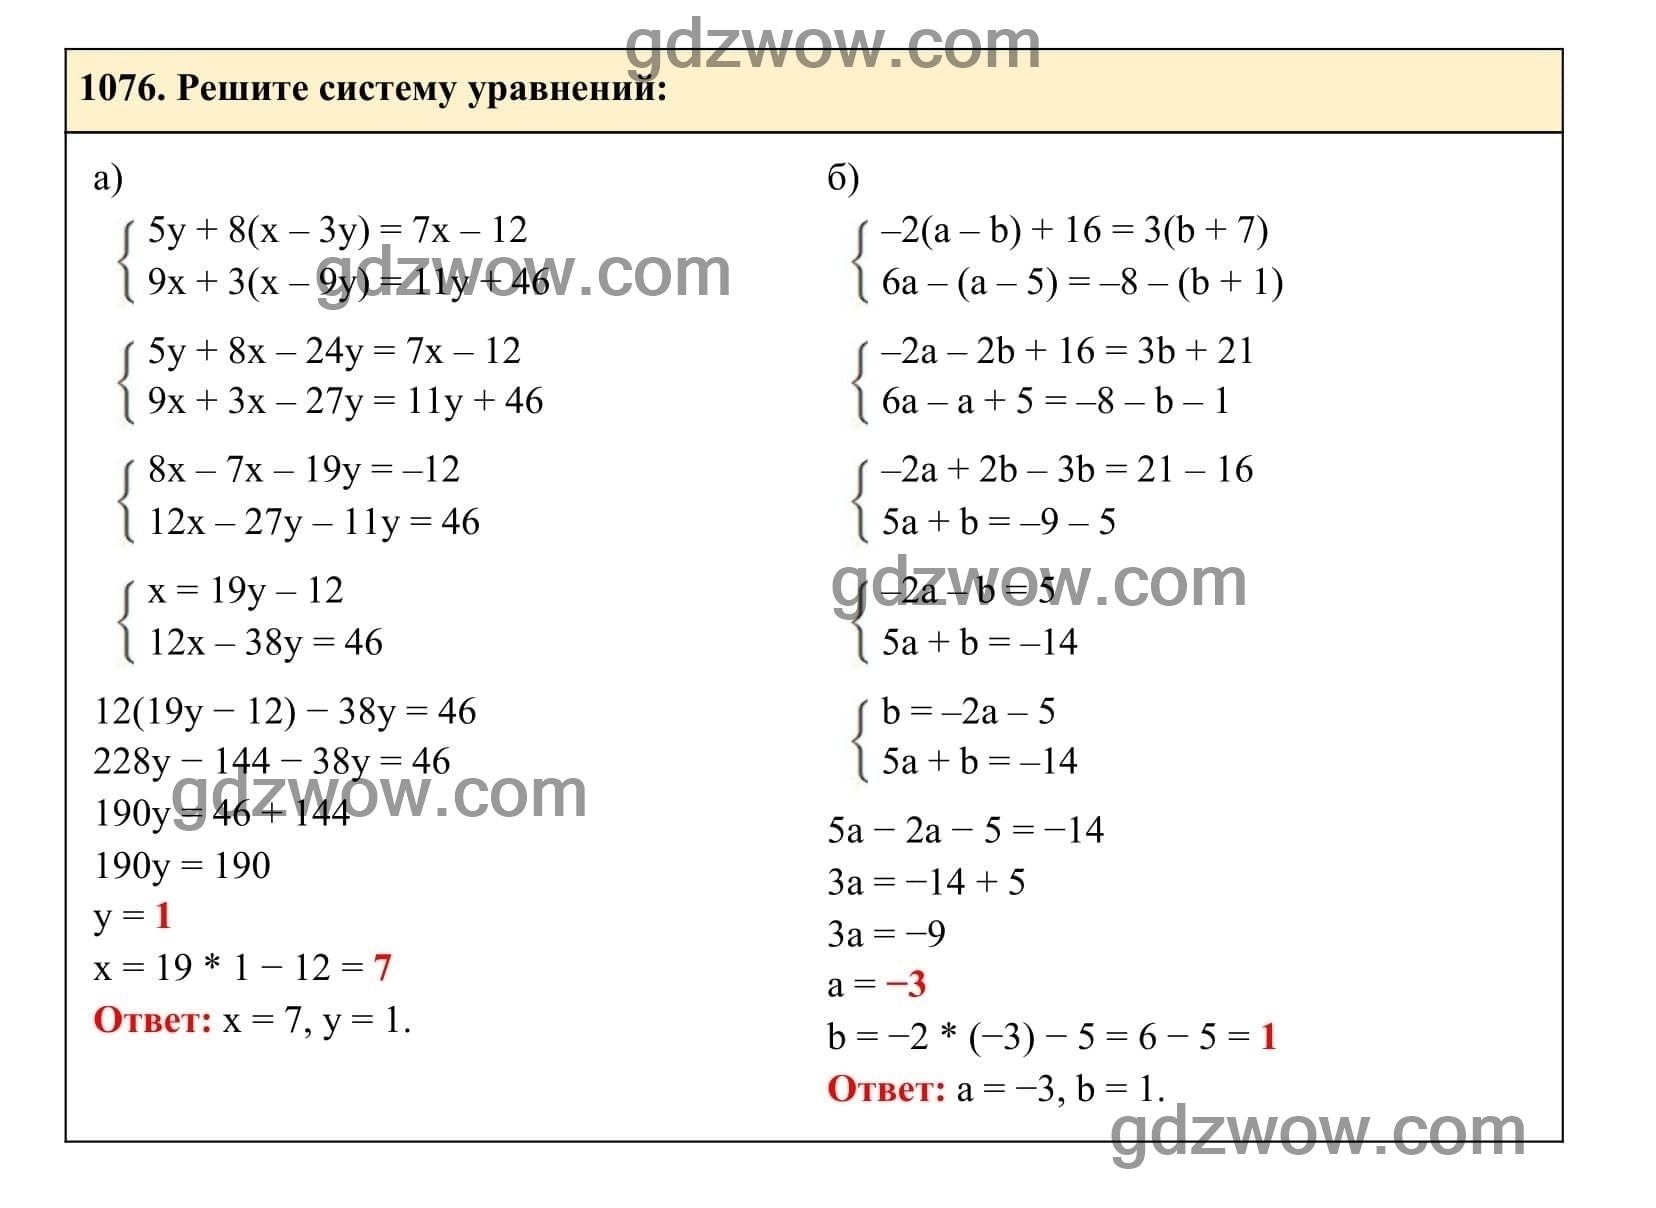 Упражнение 1076 - ГДЗ по Алгебре 7 класс Учебник Макарычев (решебник) - GDZwow